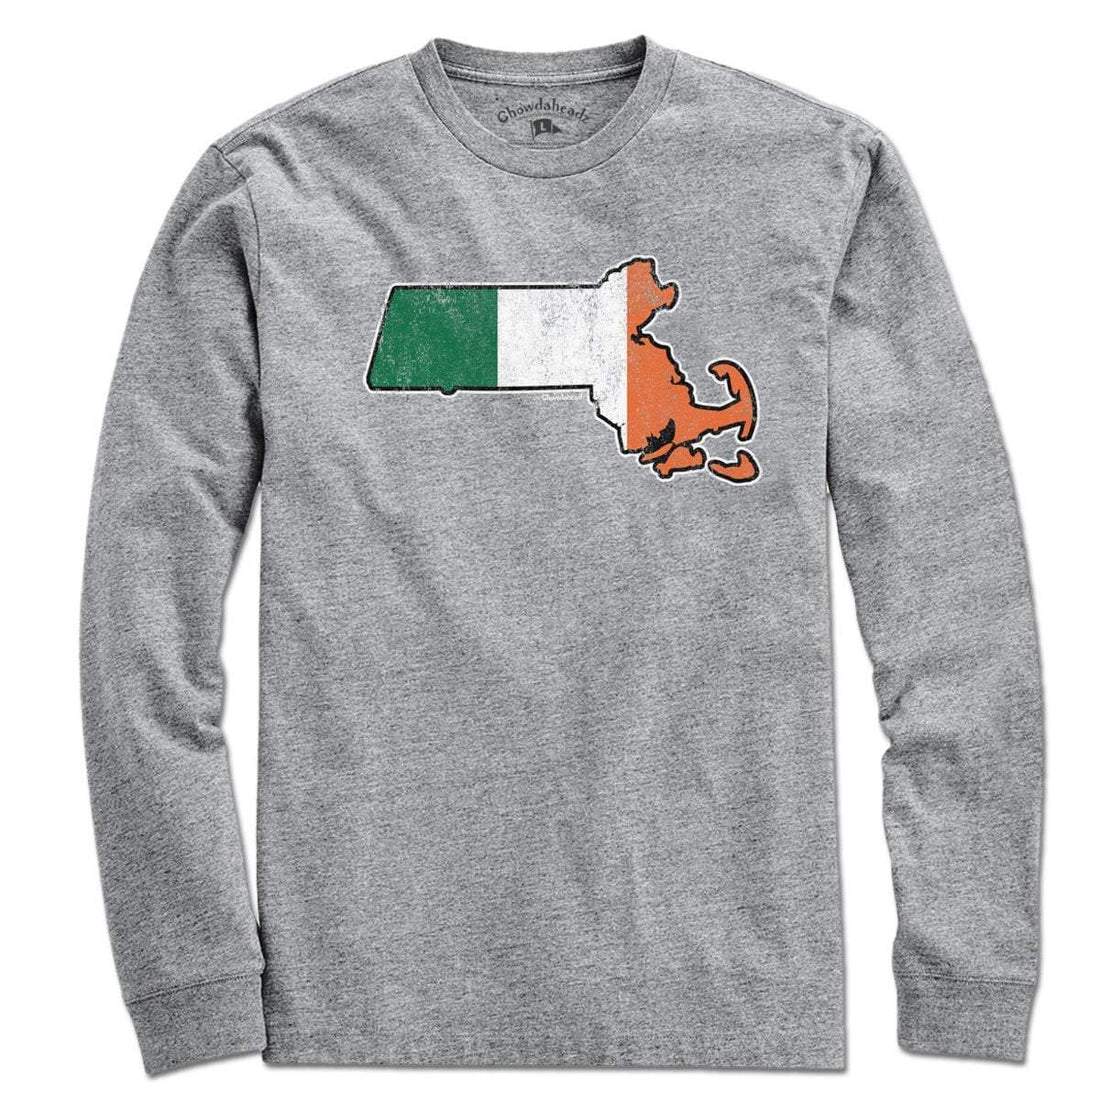 Irish Massachusetts T-shirt - Chowdaheadz